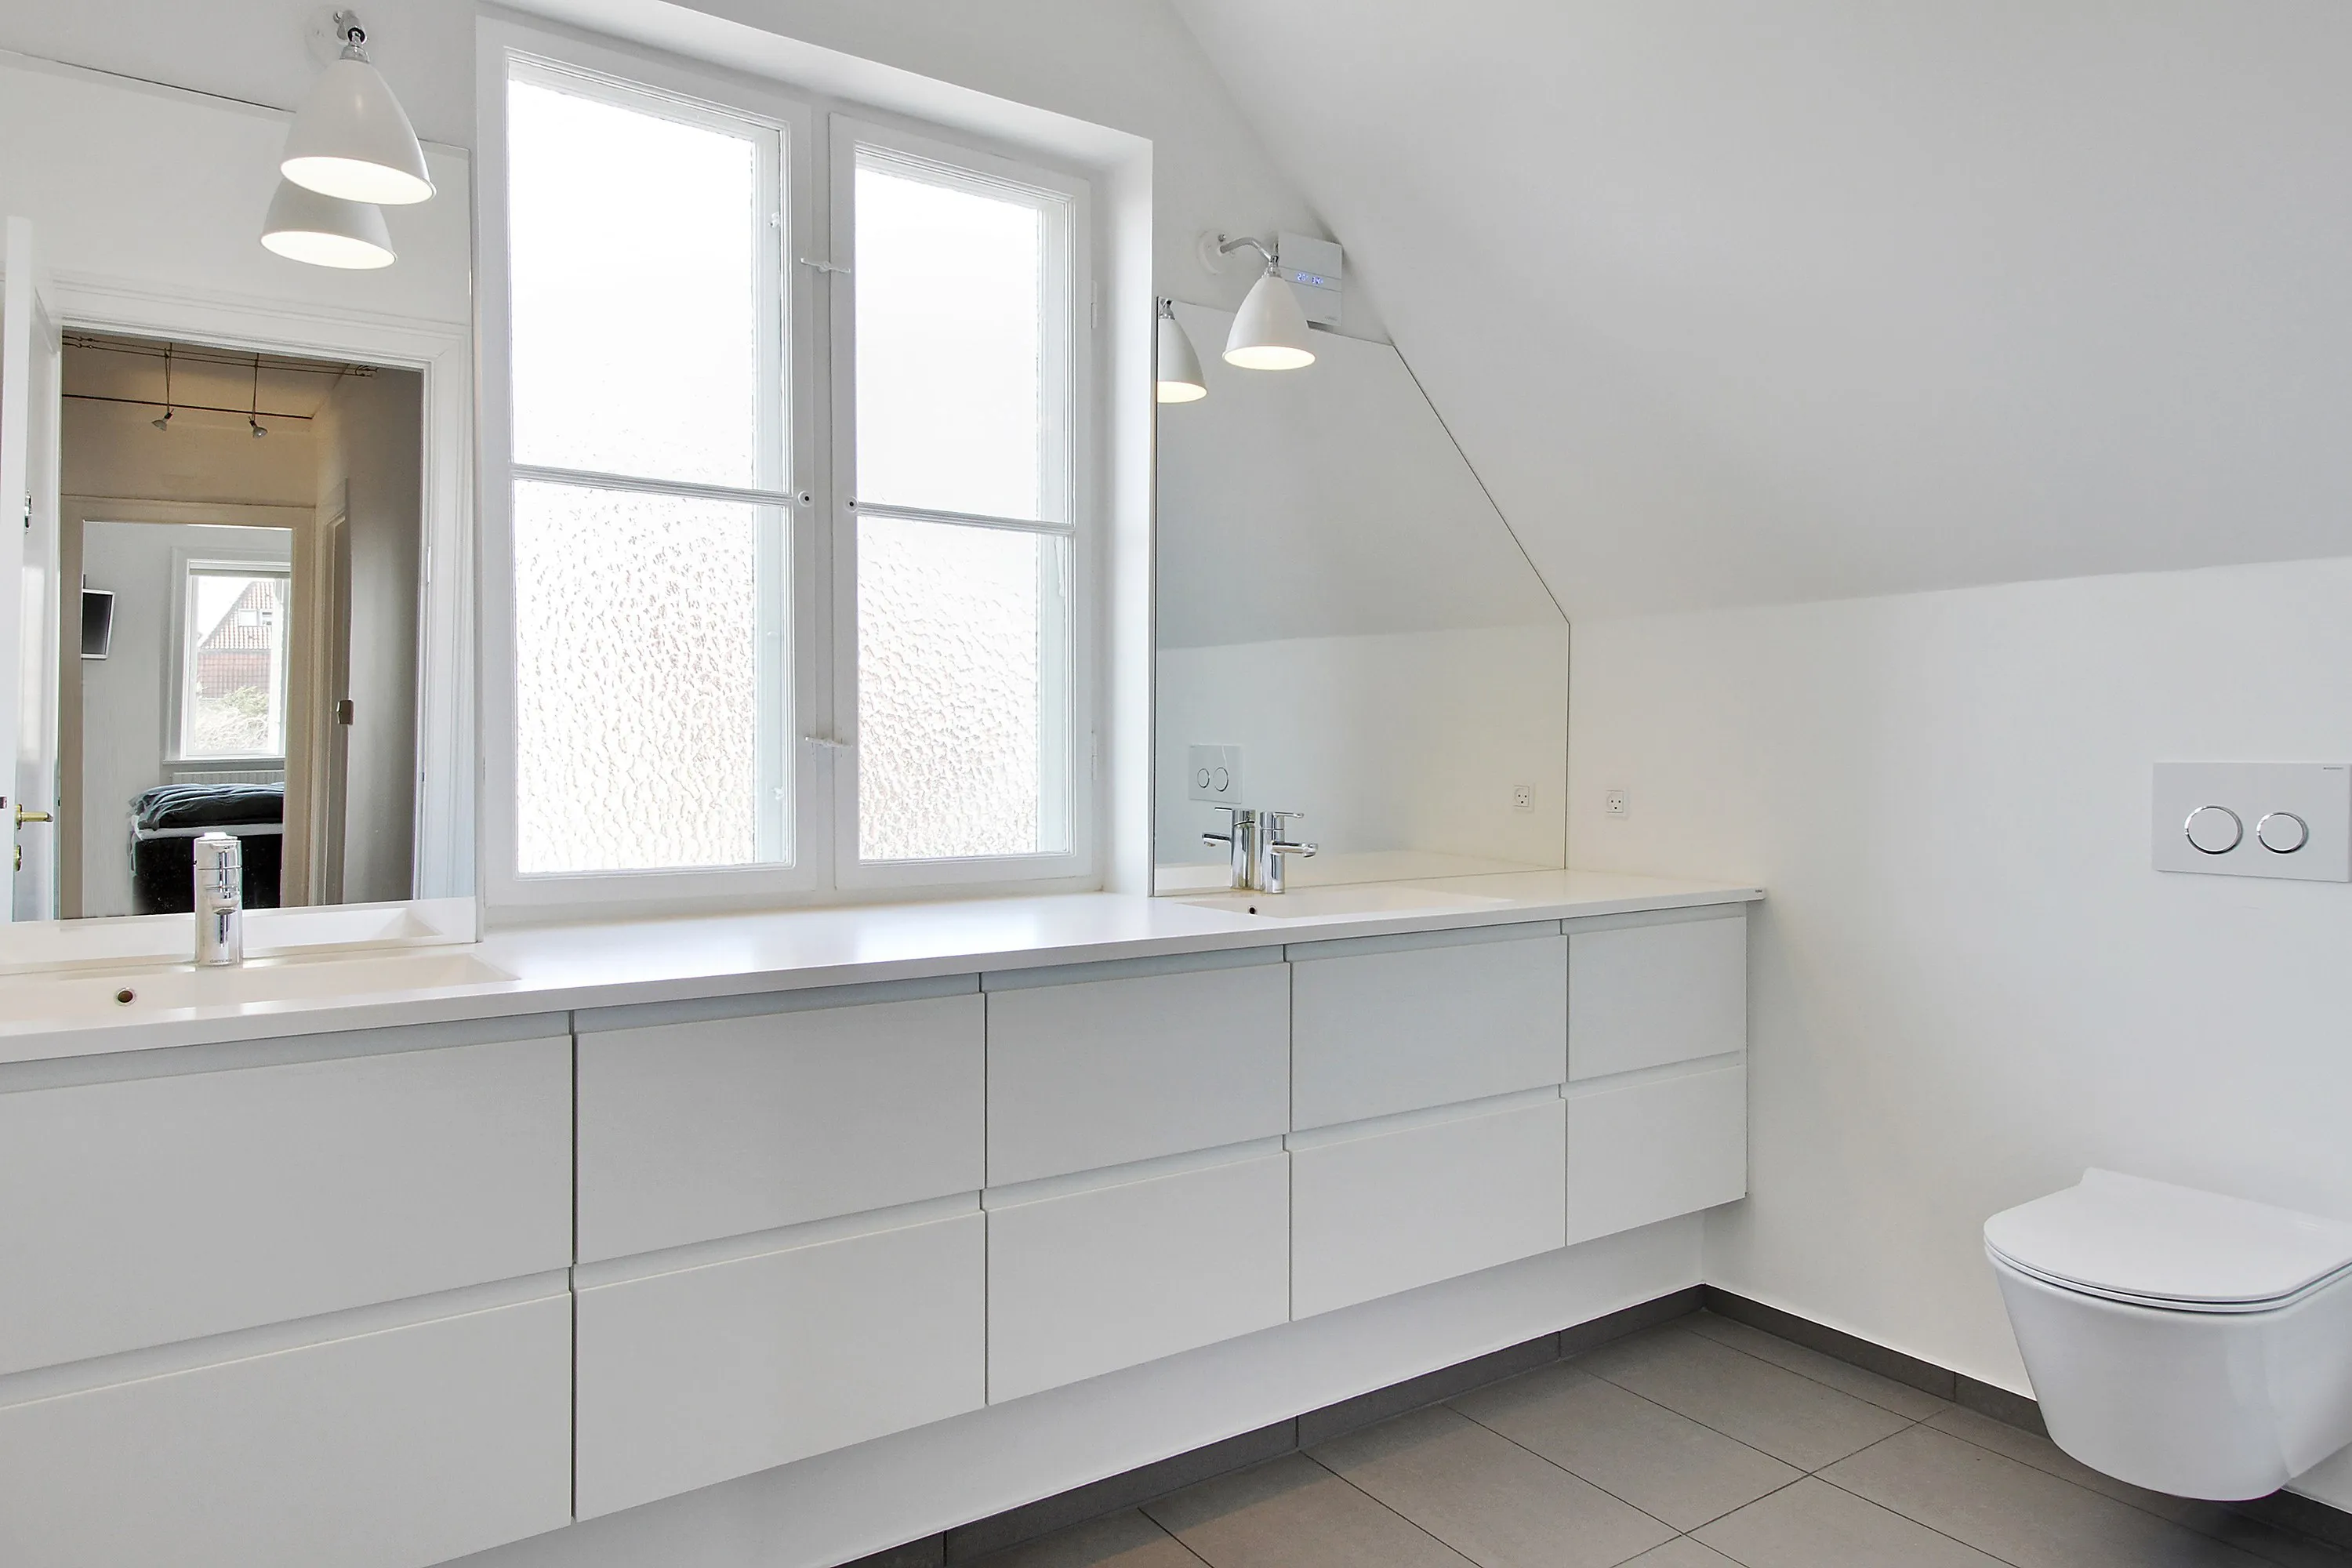 Mekaniker Hykler søskende Nyt badeværelse på 7,7 m2 med kuma vask og1 ⇒ Håndværker.dk - Håndværker.dk